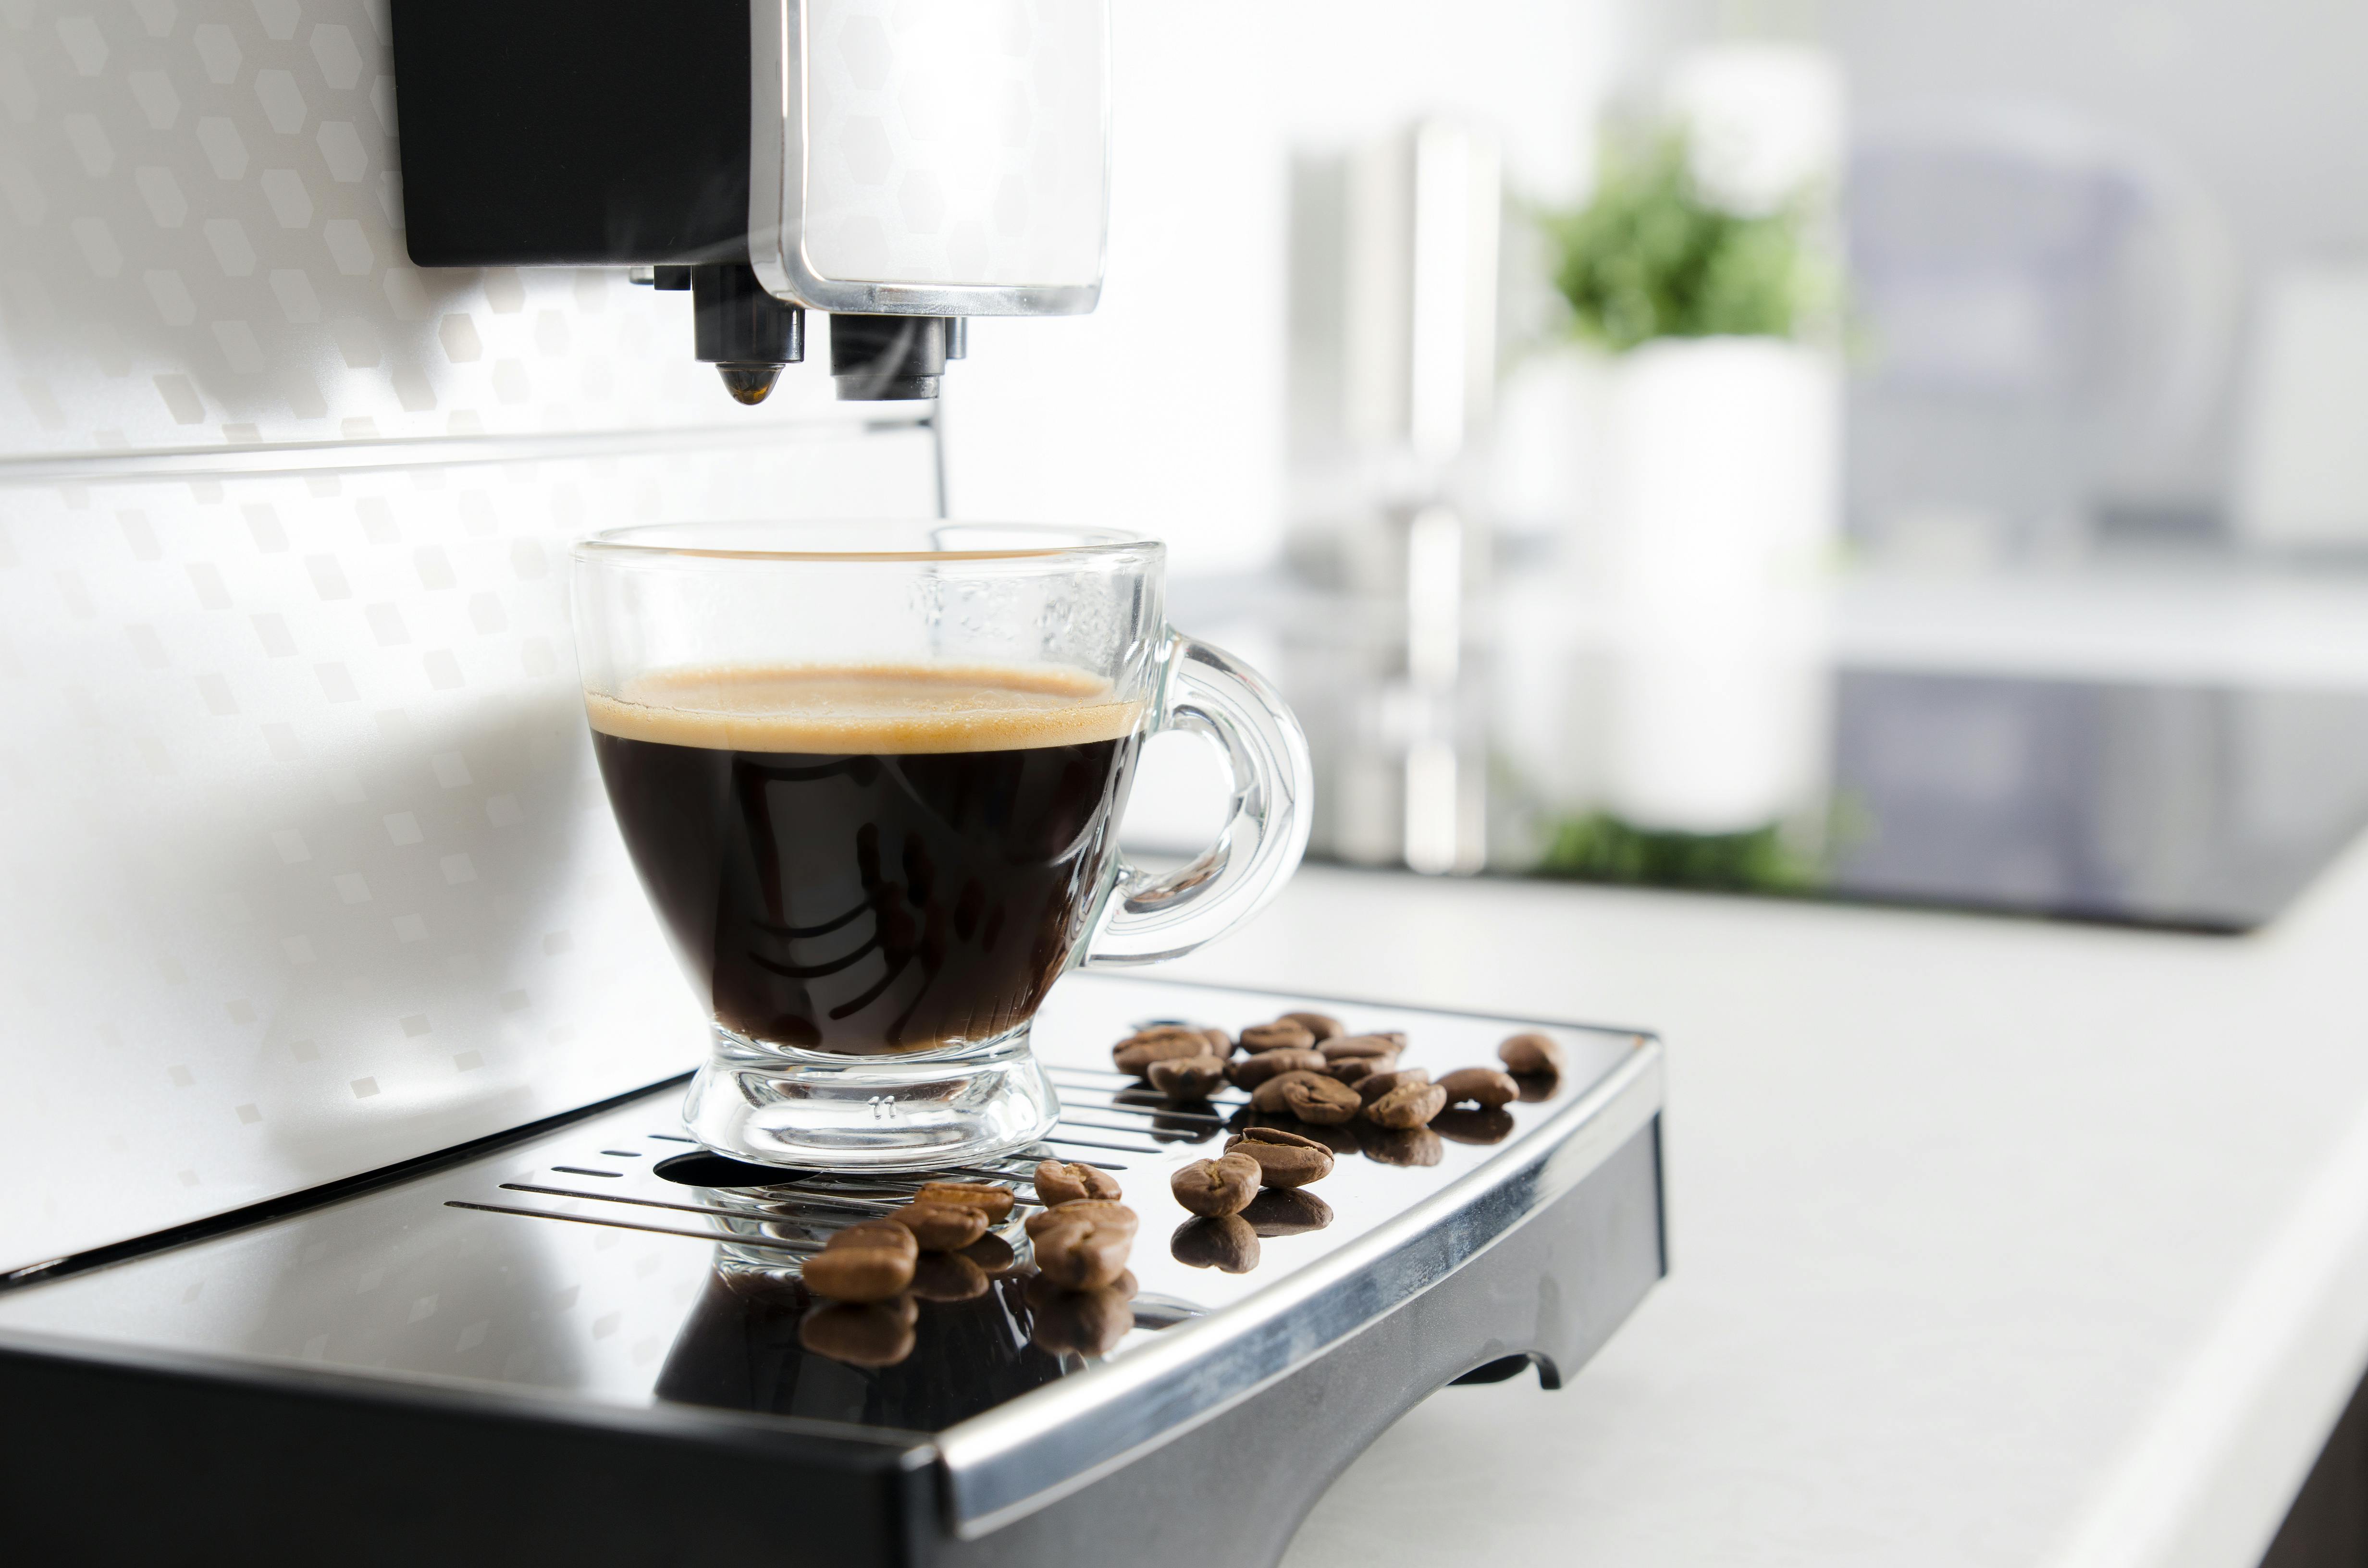 Печатная машинка и кофе. Кофе с кофеваркой картинки вид прямо. Кофеин кофемашины